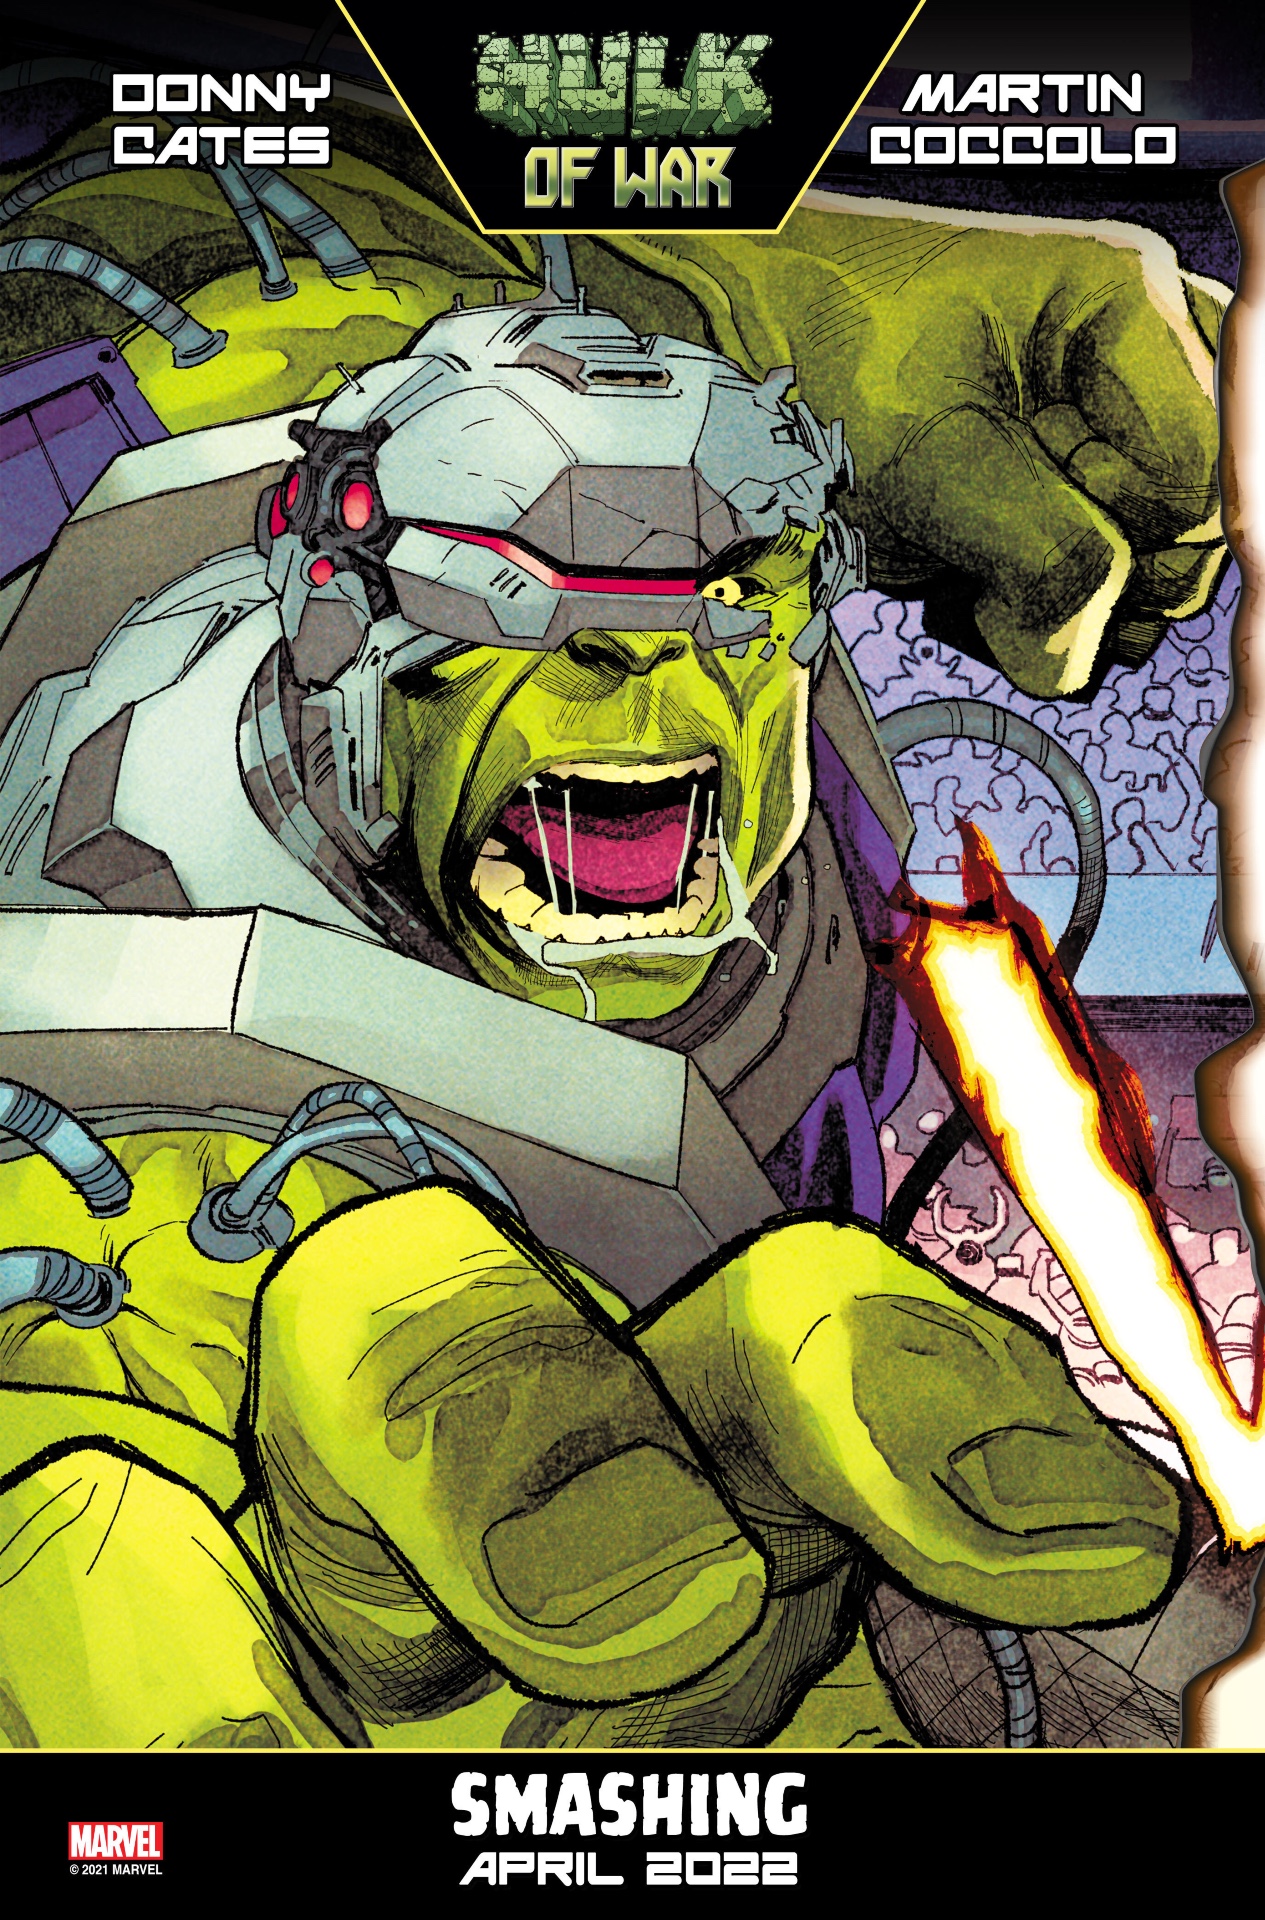 Imágenes promocionales de Hulk vs.Thor